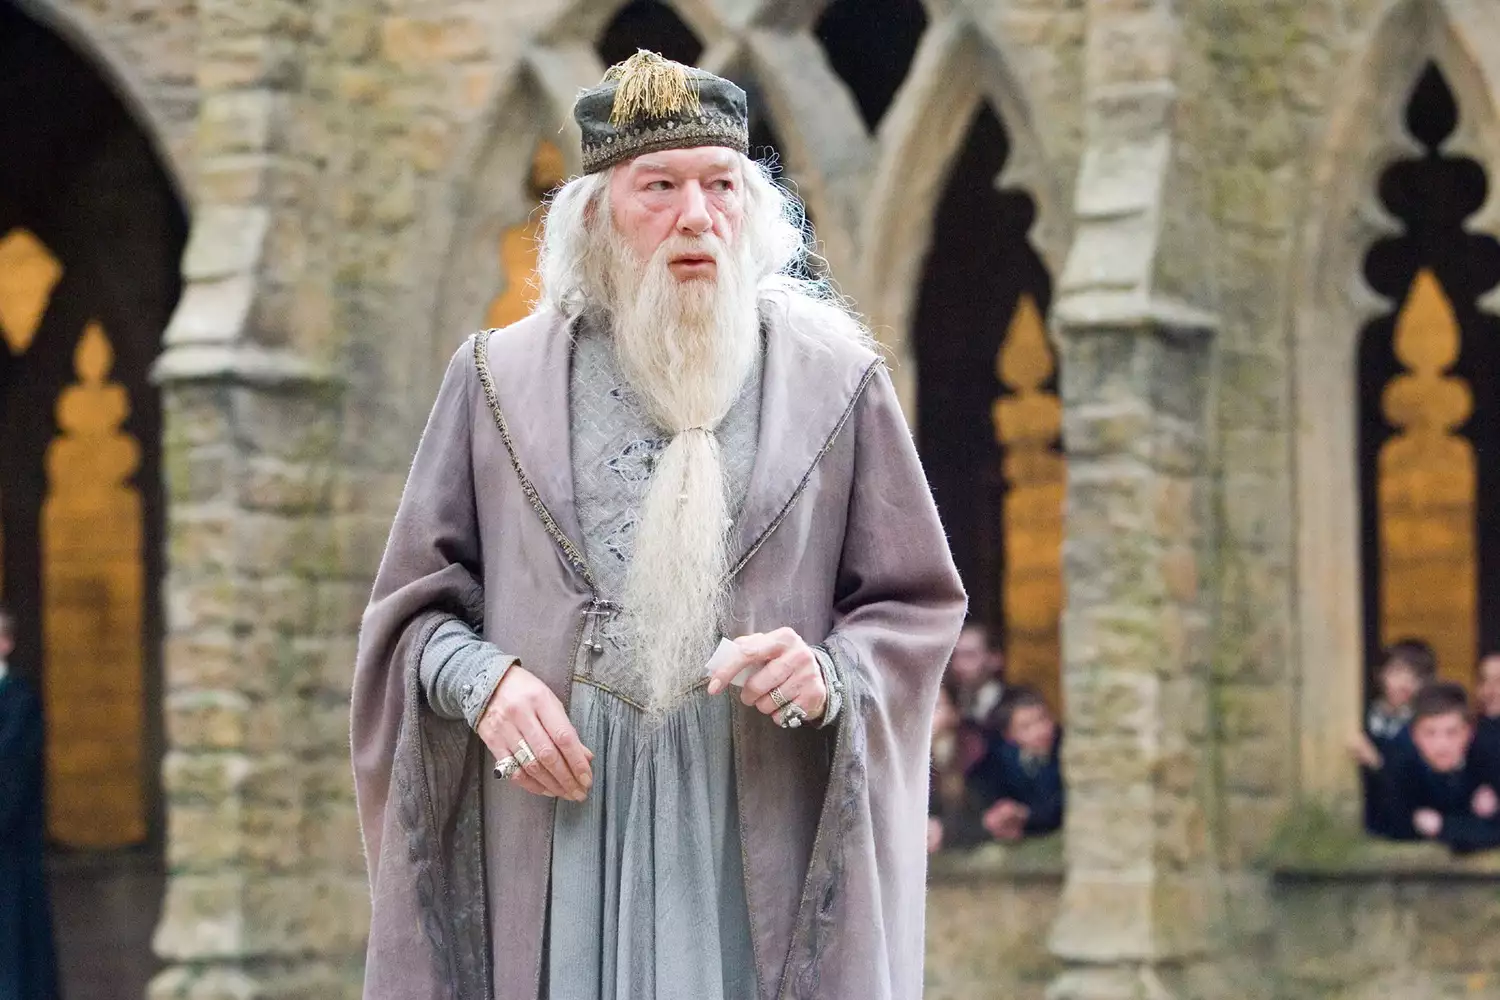 Harry Potter Filmlerinde Dumbledore Rolüyle Tanınan Aktör Michael Gambon 82 Yaşında Öldü - Dumbledore Rolüyle Tanınan Aktör Michael Gambon'un "zatürre nöbetinin" ardından hastanede "huzur içinde" öldüğü açıklandı